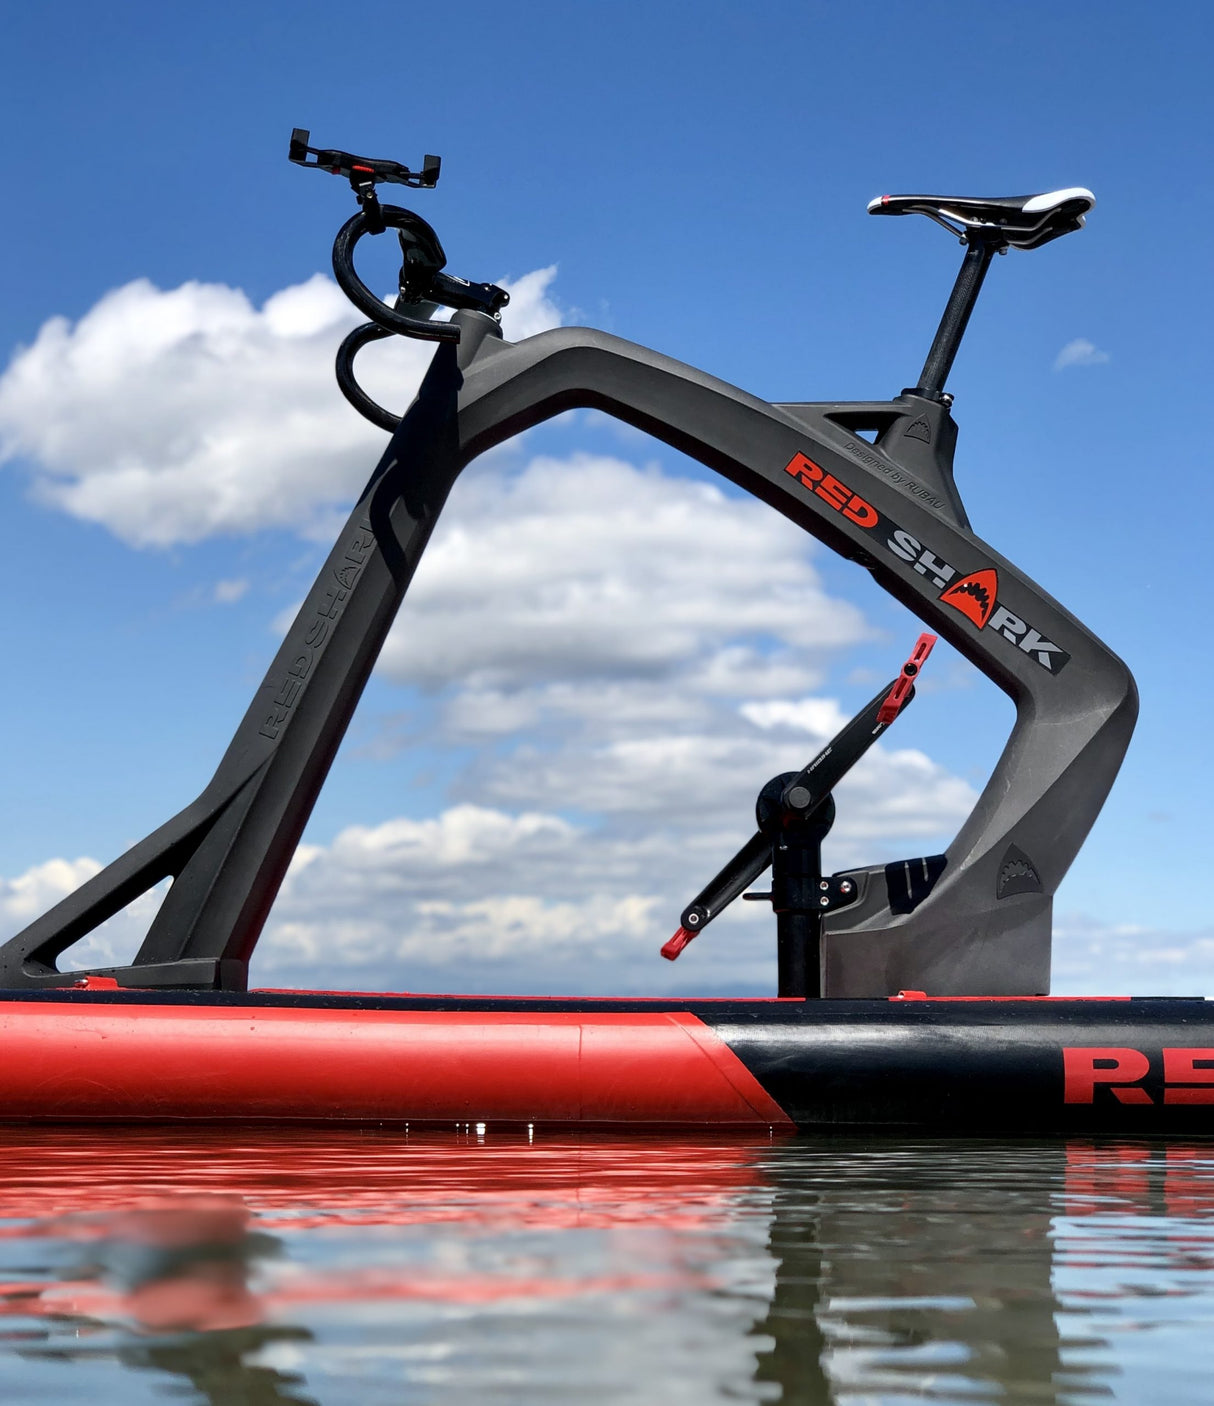 Red Shark Fitness water bike